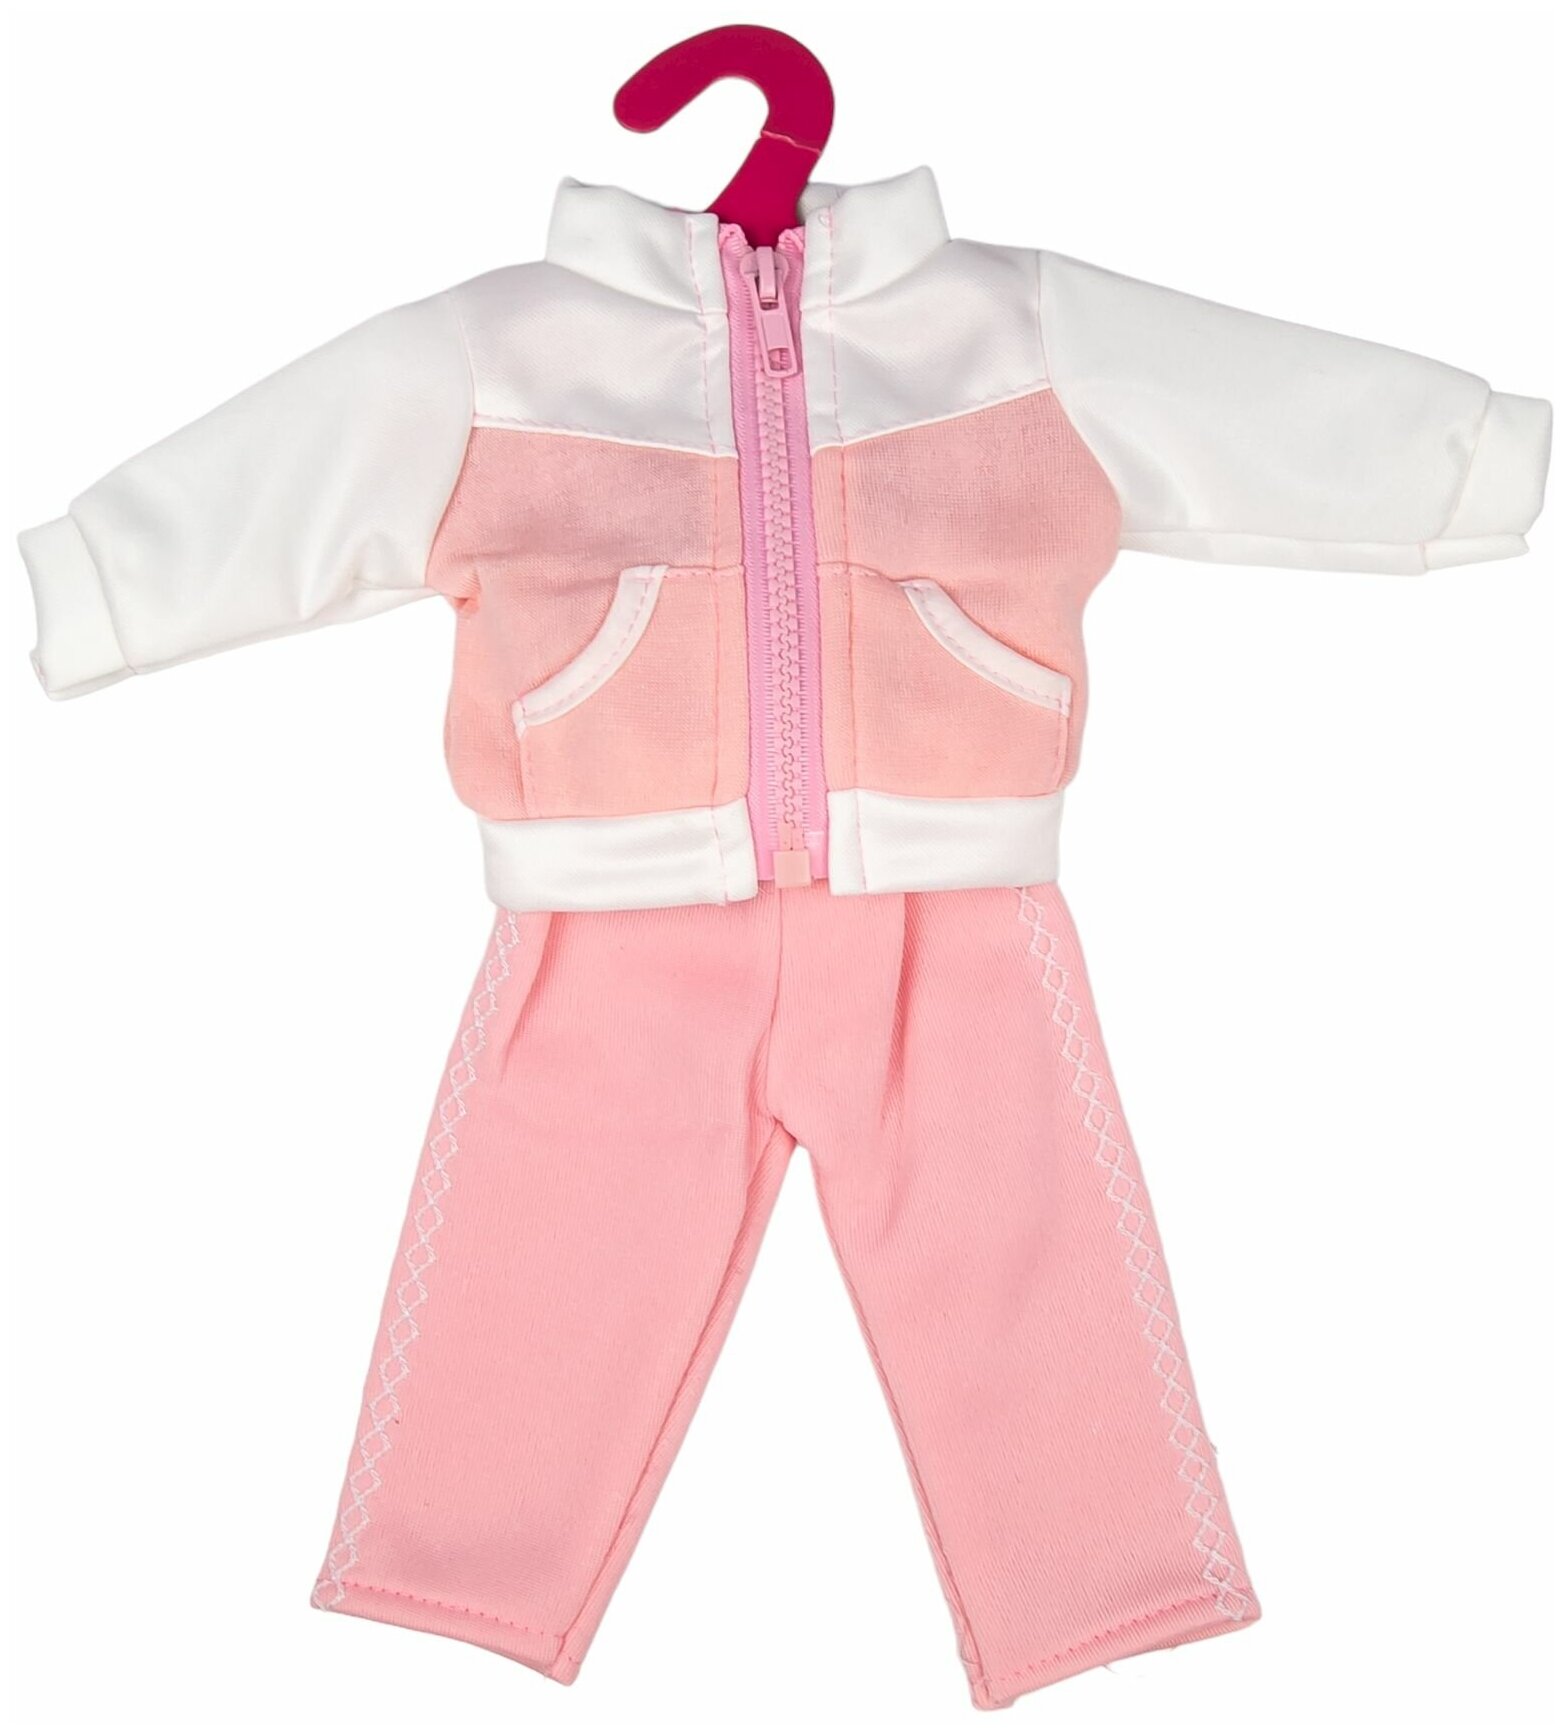 Одежда для куклы ростом 35 - 42 см, розовый спортивный костюм для пупса, GCM18-48